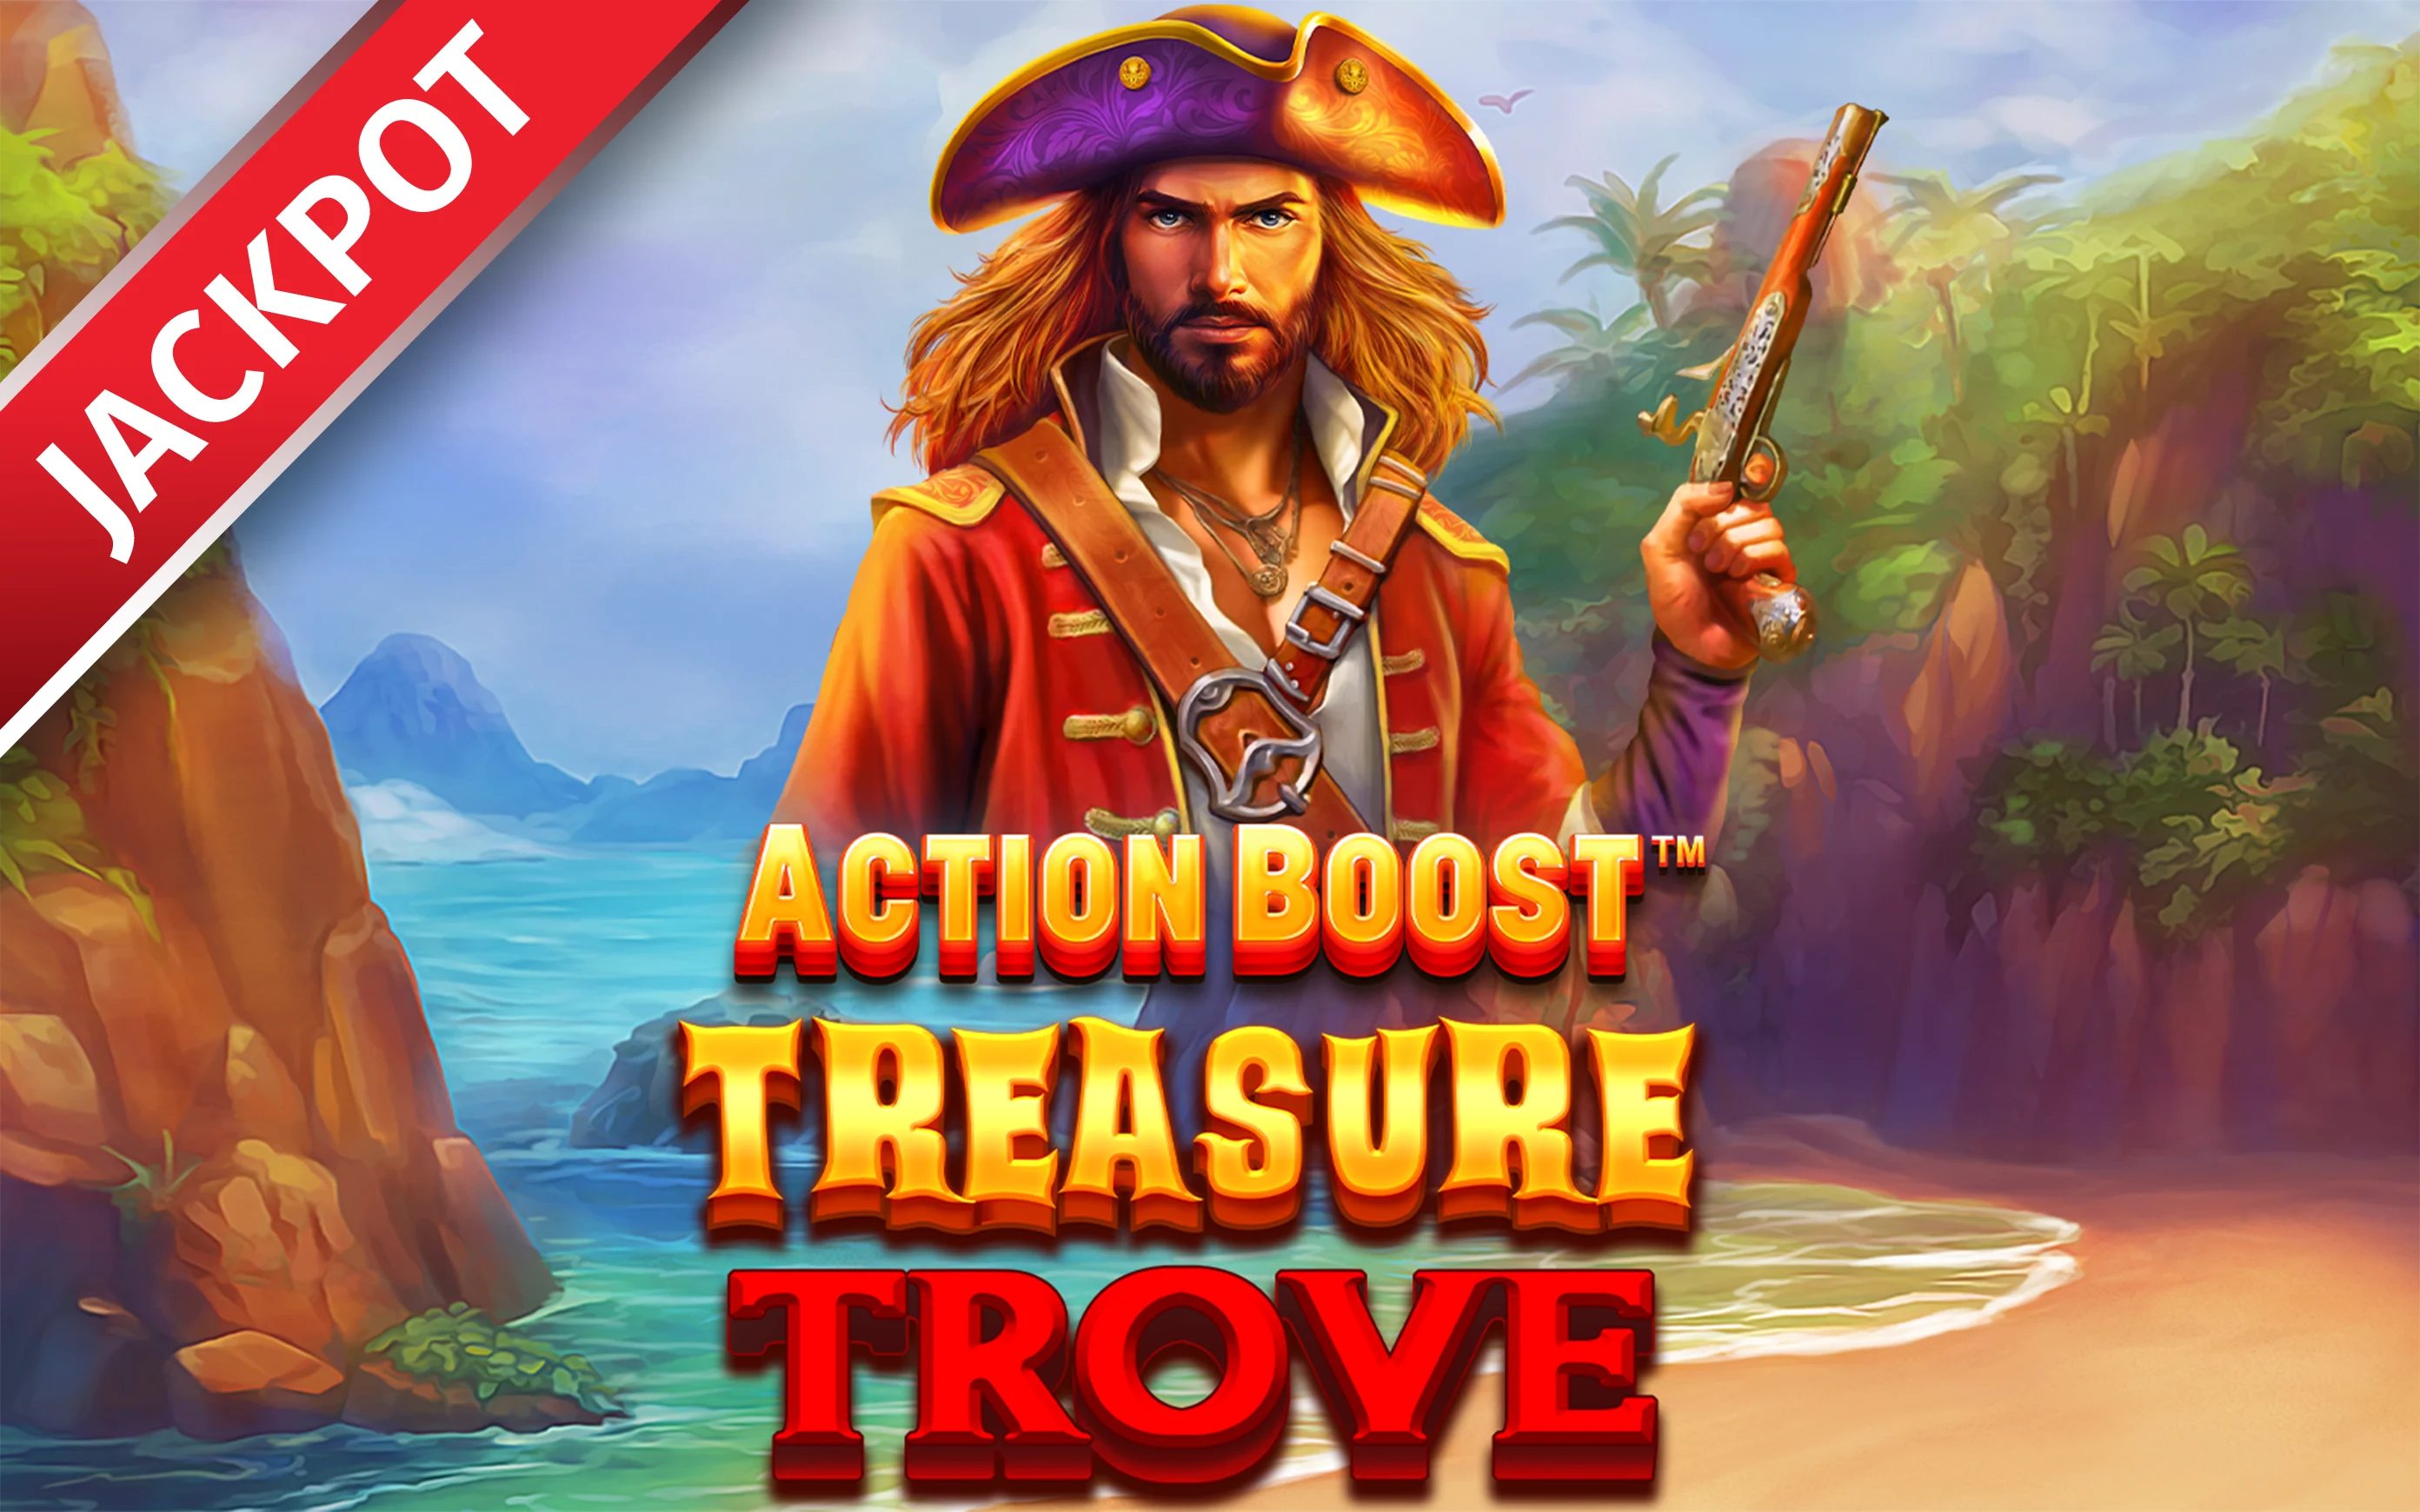 Παίξτε Action Boost™ Treasure Trove™ στο online καζίνο Starcasino.be